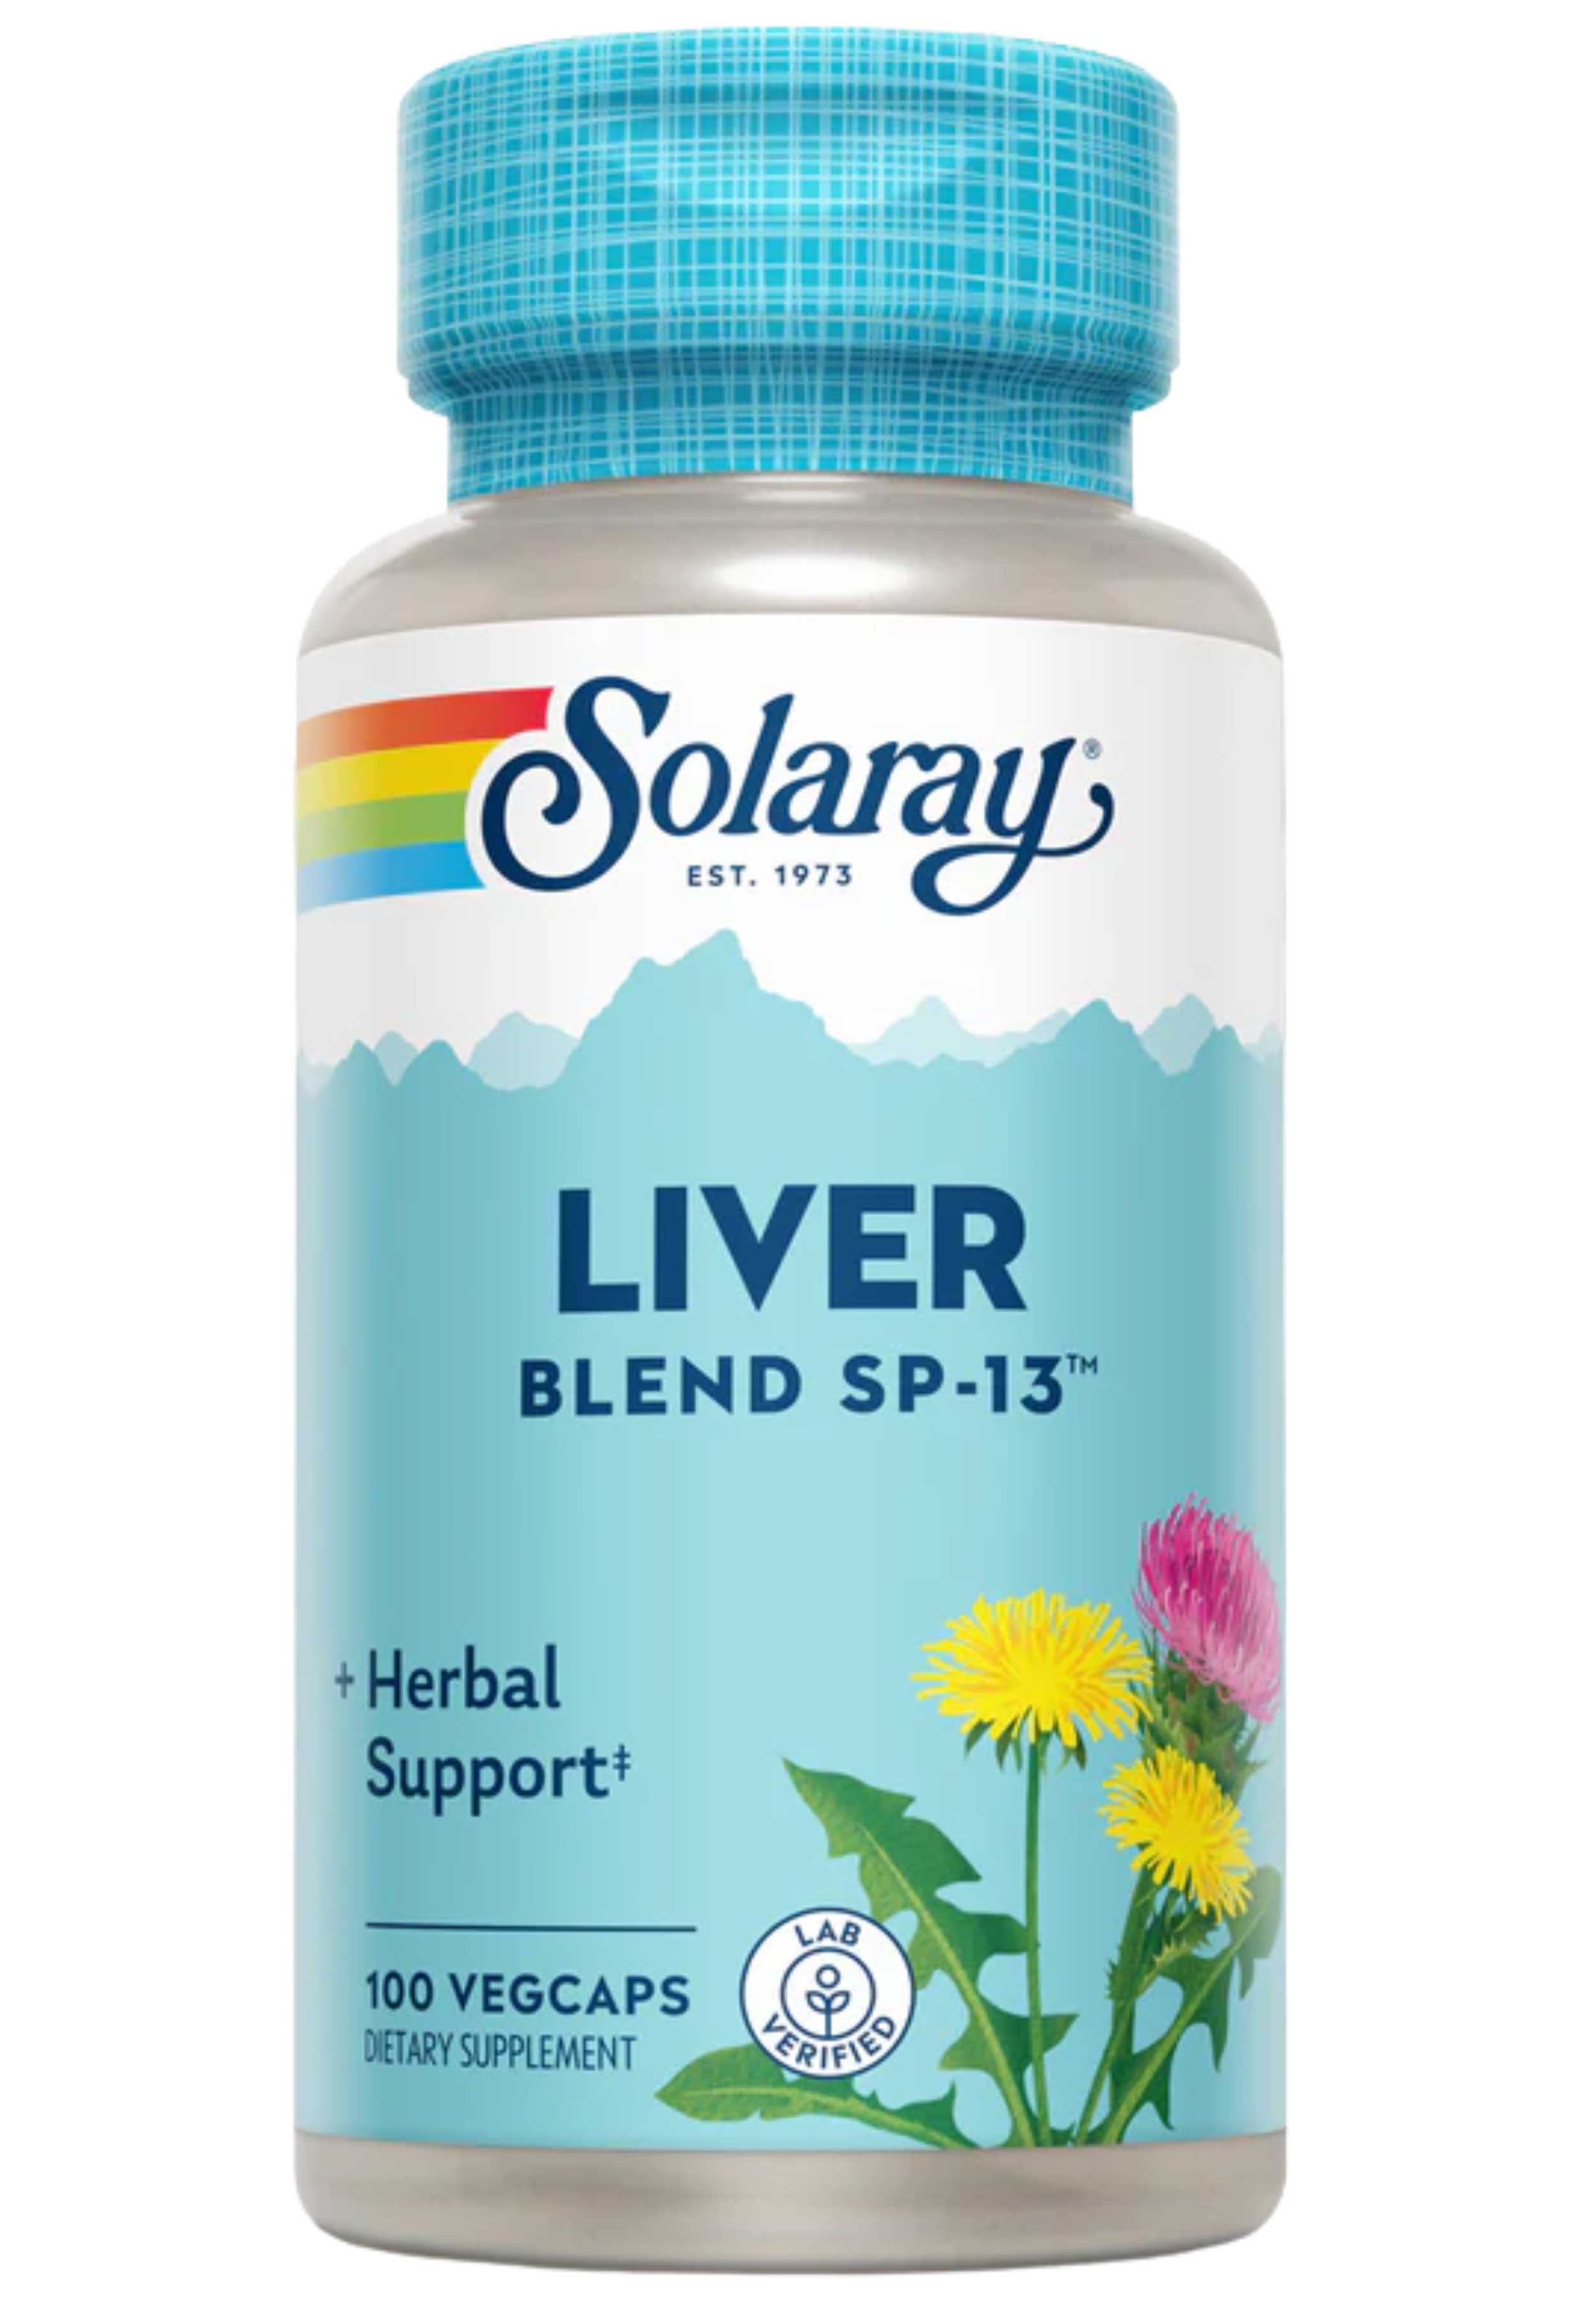 Solaray Liver Blend SP-13